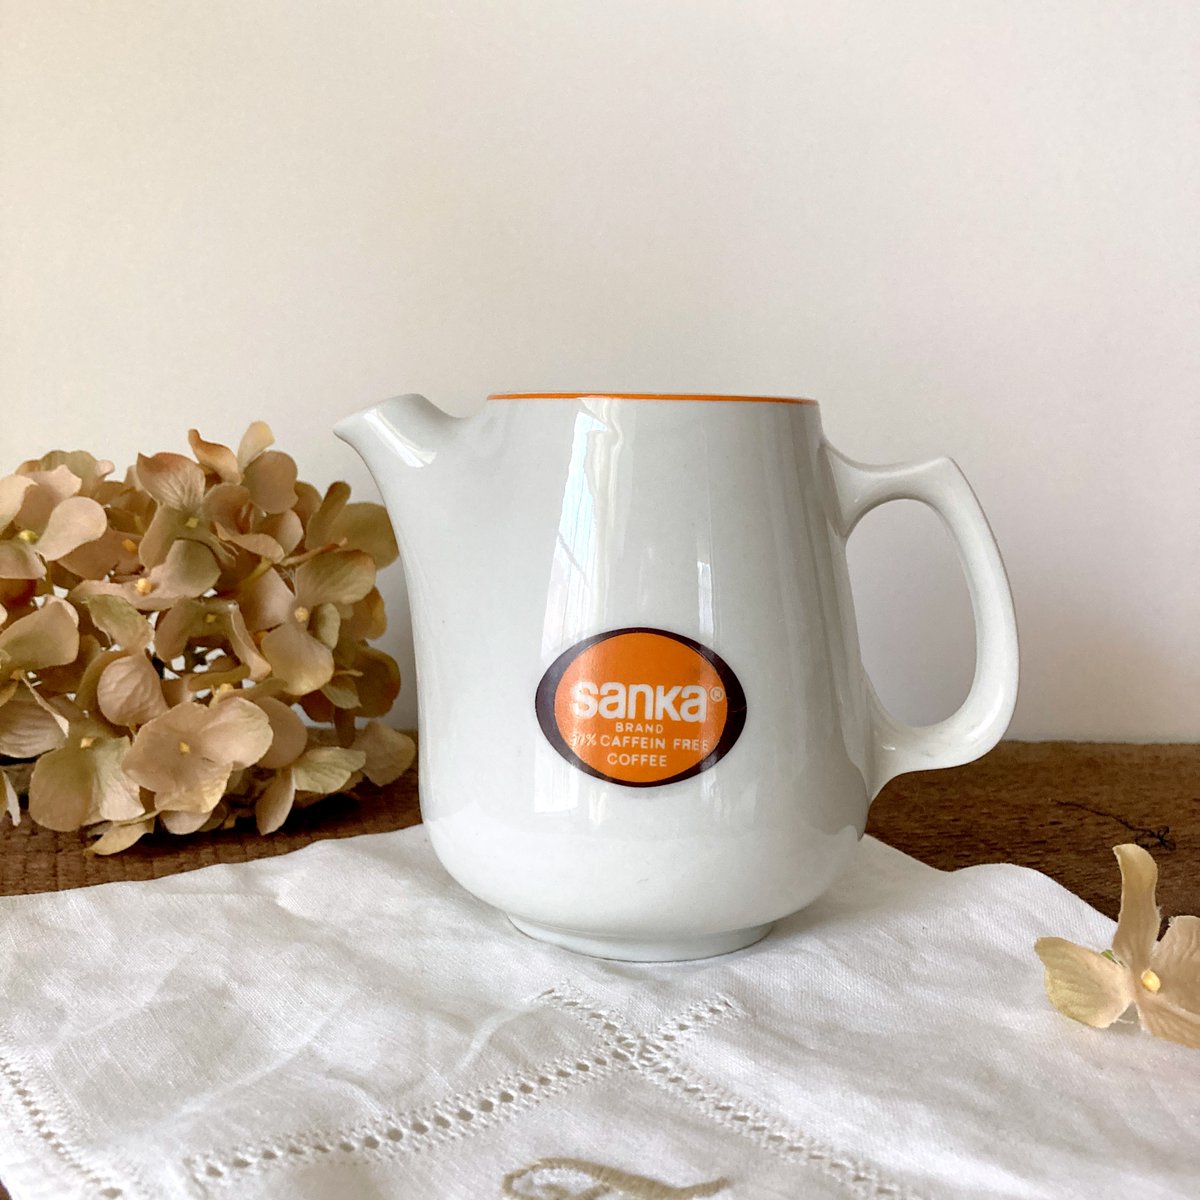 Vintage Sanka Decaffeinated Coffee Single Serve Coffee Pot etsy.me/3Z7GMuH via @Etsy #vintagesanka #sankacoffeepot #1970skitchen #retrohousewares #hallchina #alegriacollection #vintageandmain